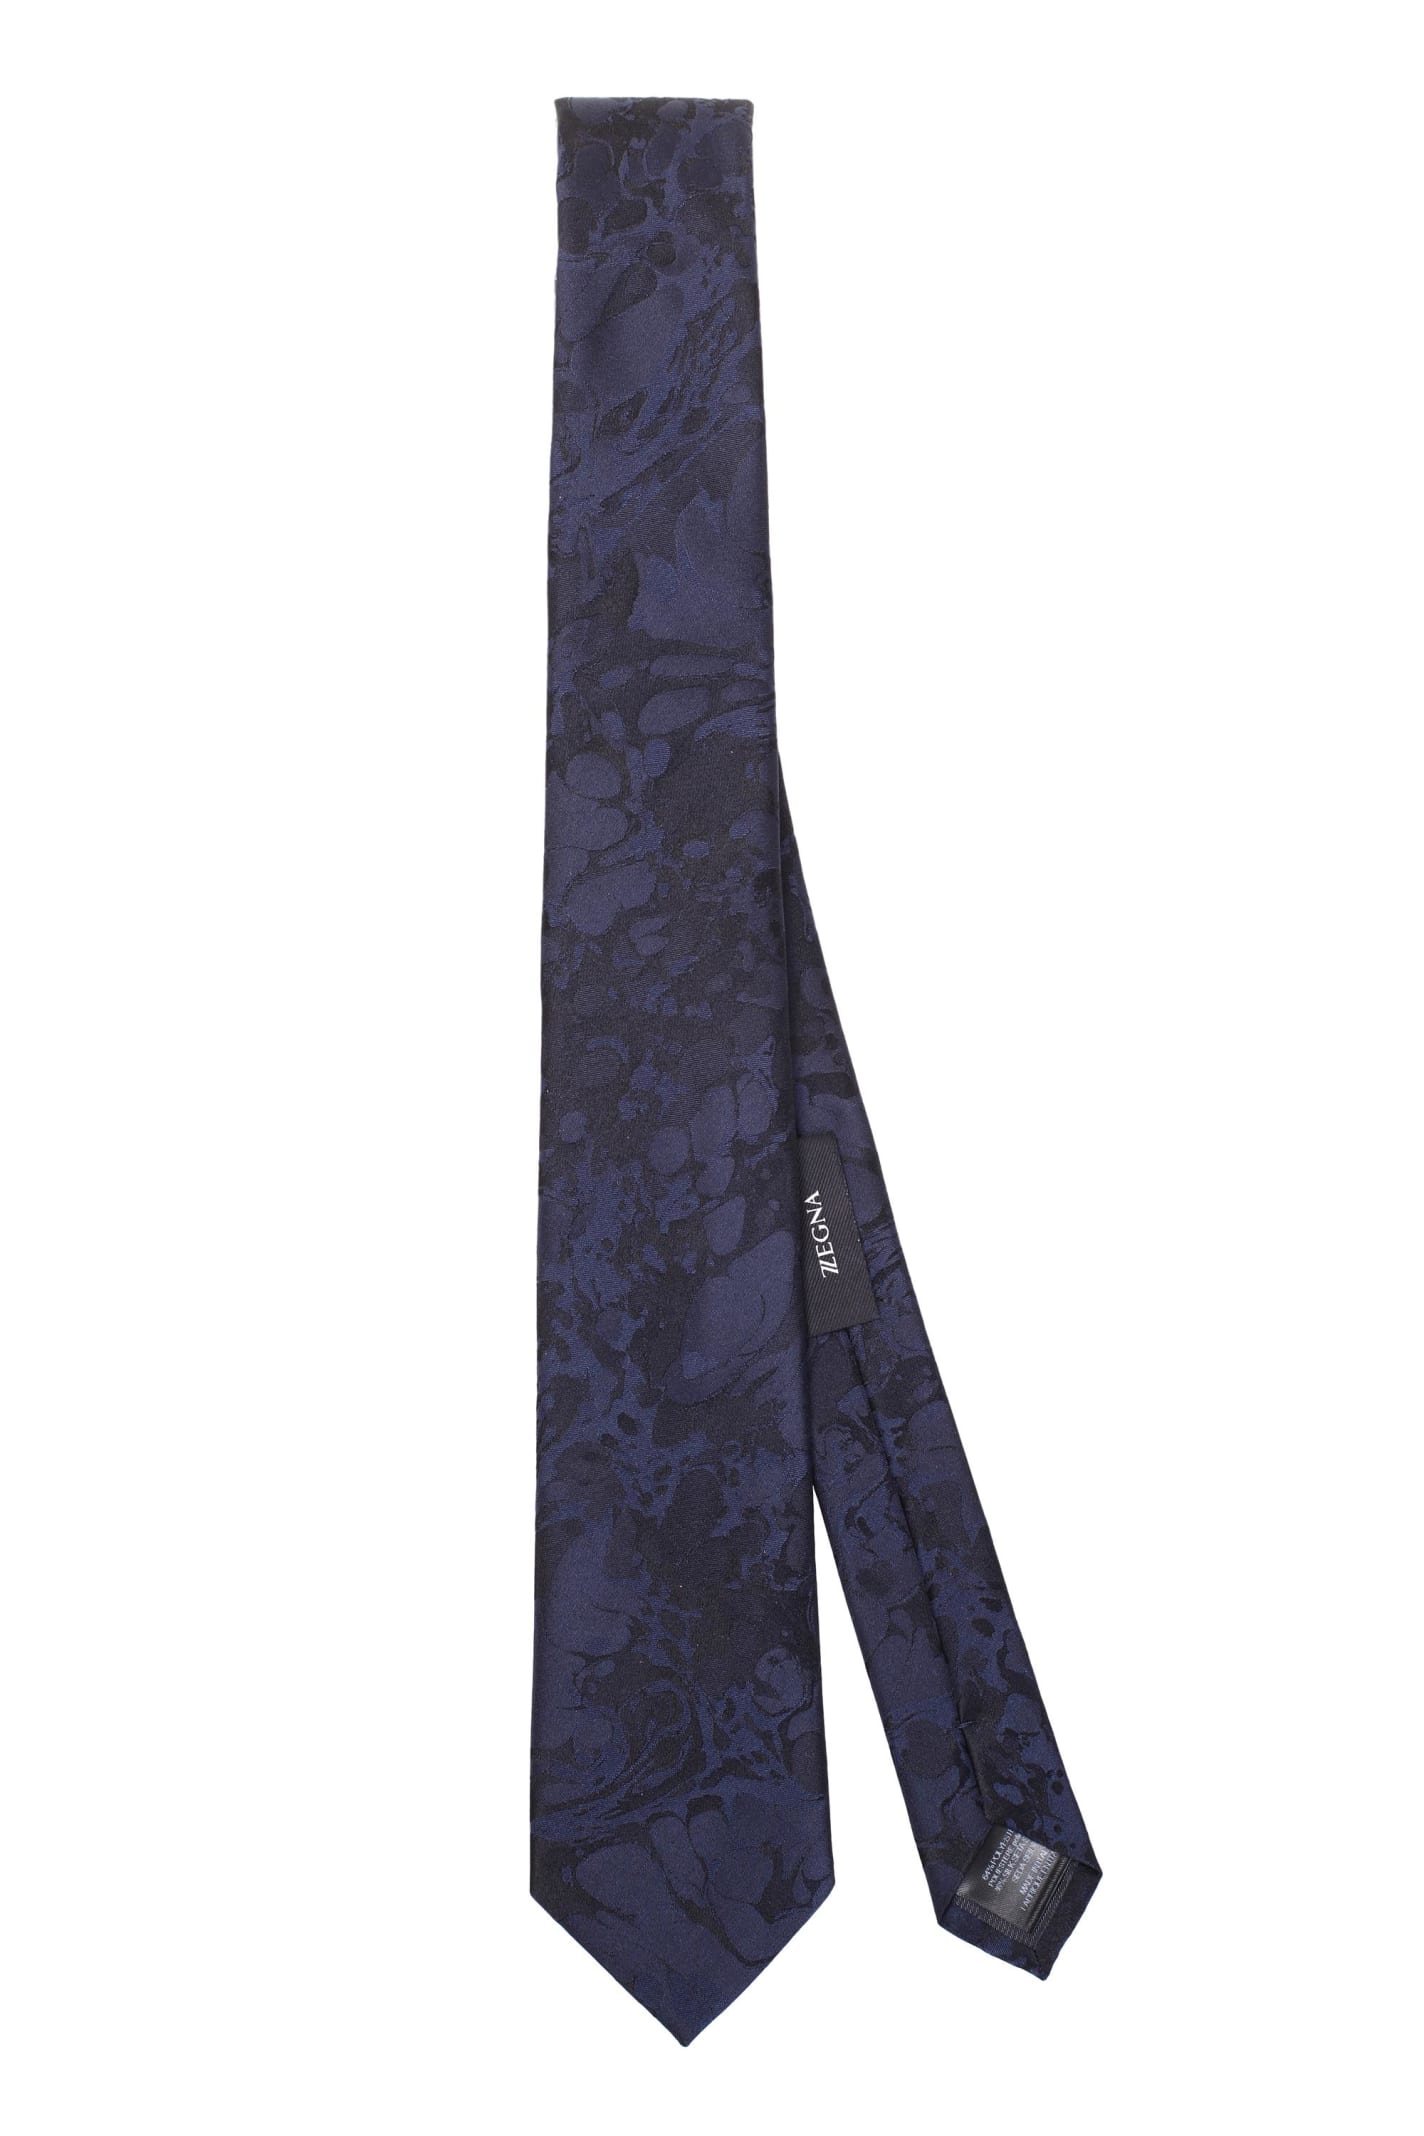 Z Zegna Blue patterned tie